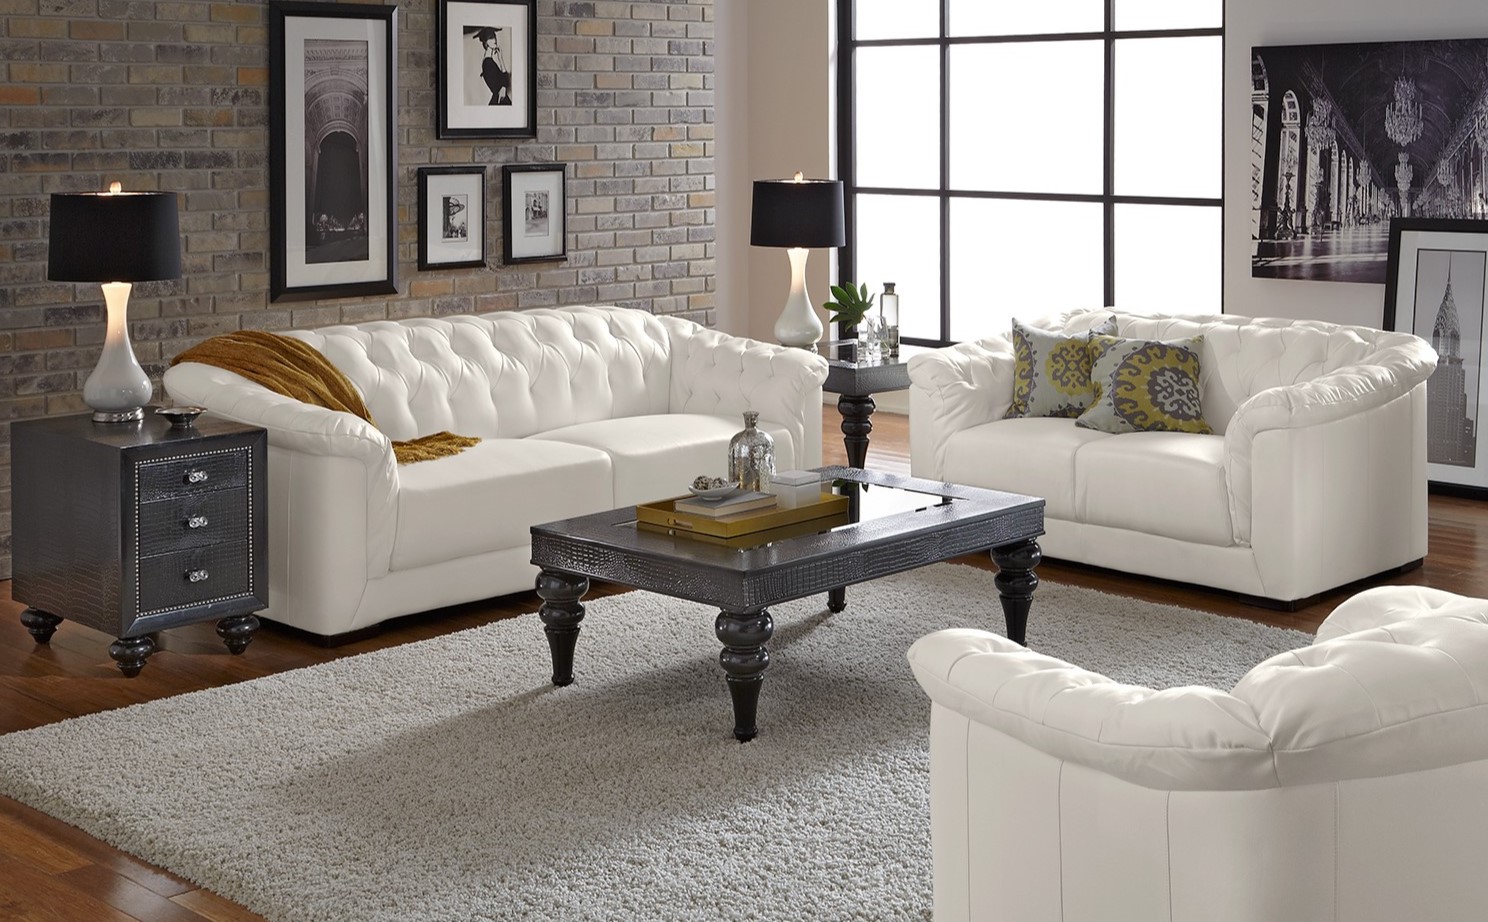 Белый диван стильно смотрится на фоне кирпичной стены в интерьере